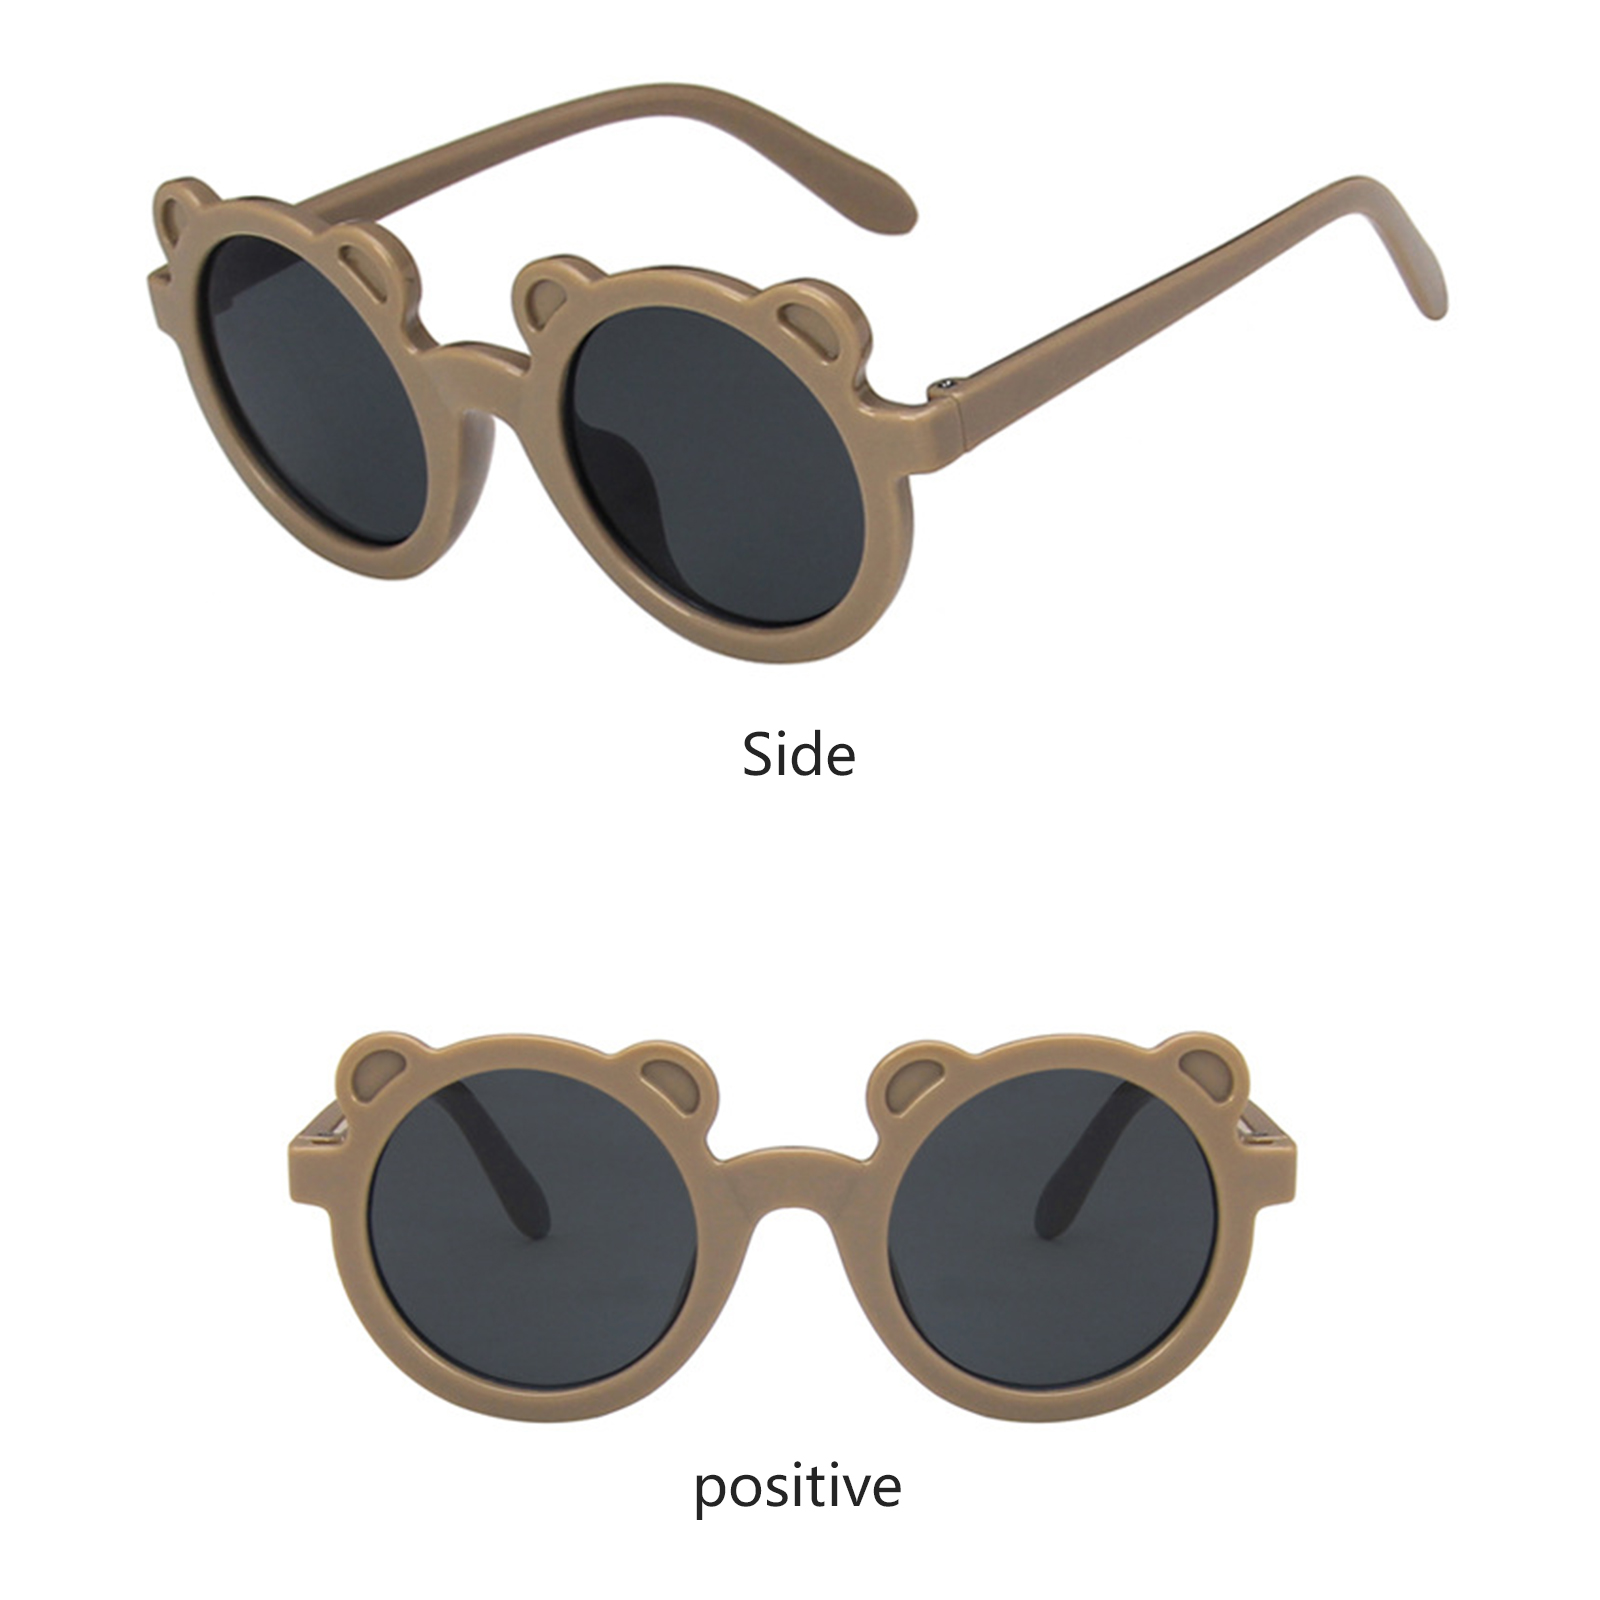 Children Sunglasses Round Frame Bear Ear Sunglasses for Kids Boys Girls - image 3 of 6